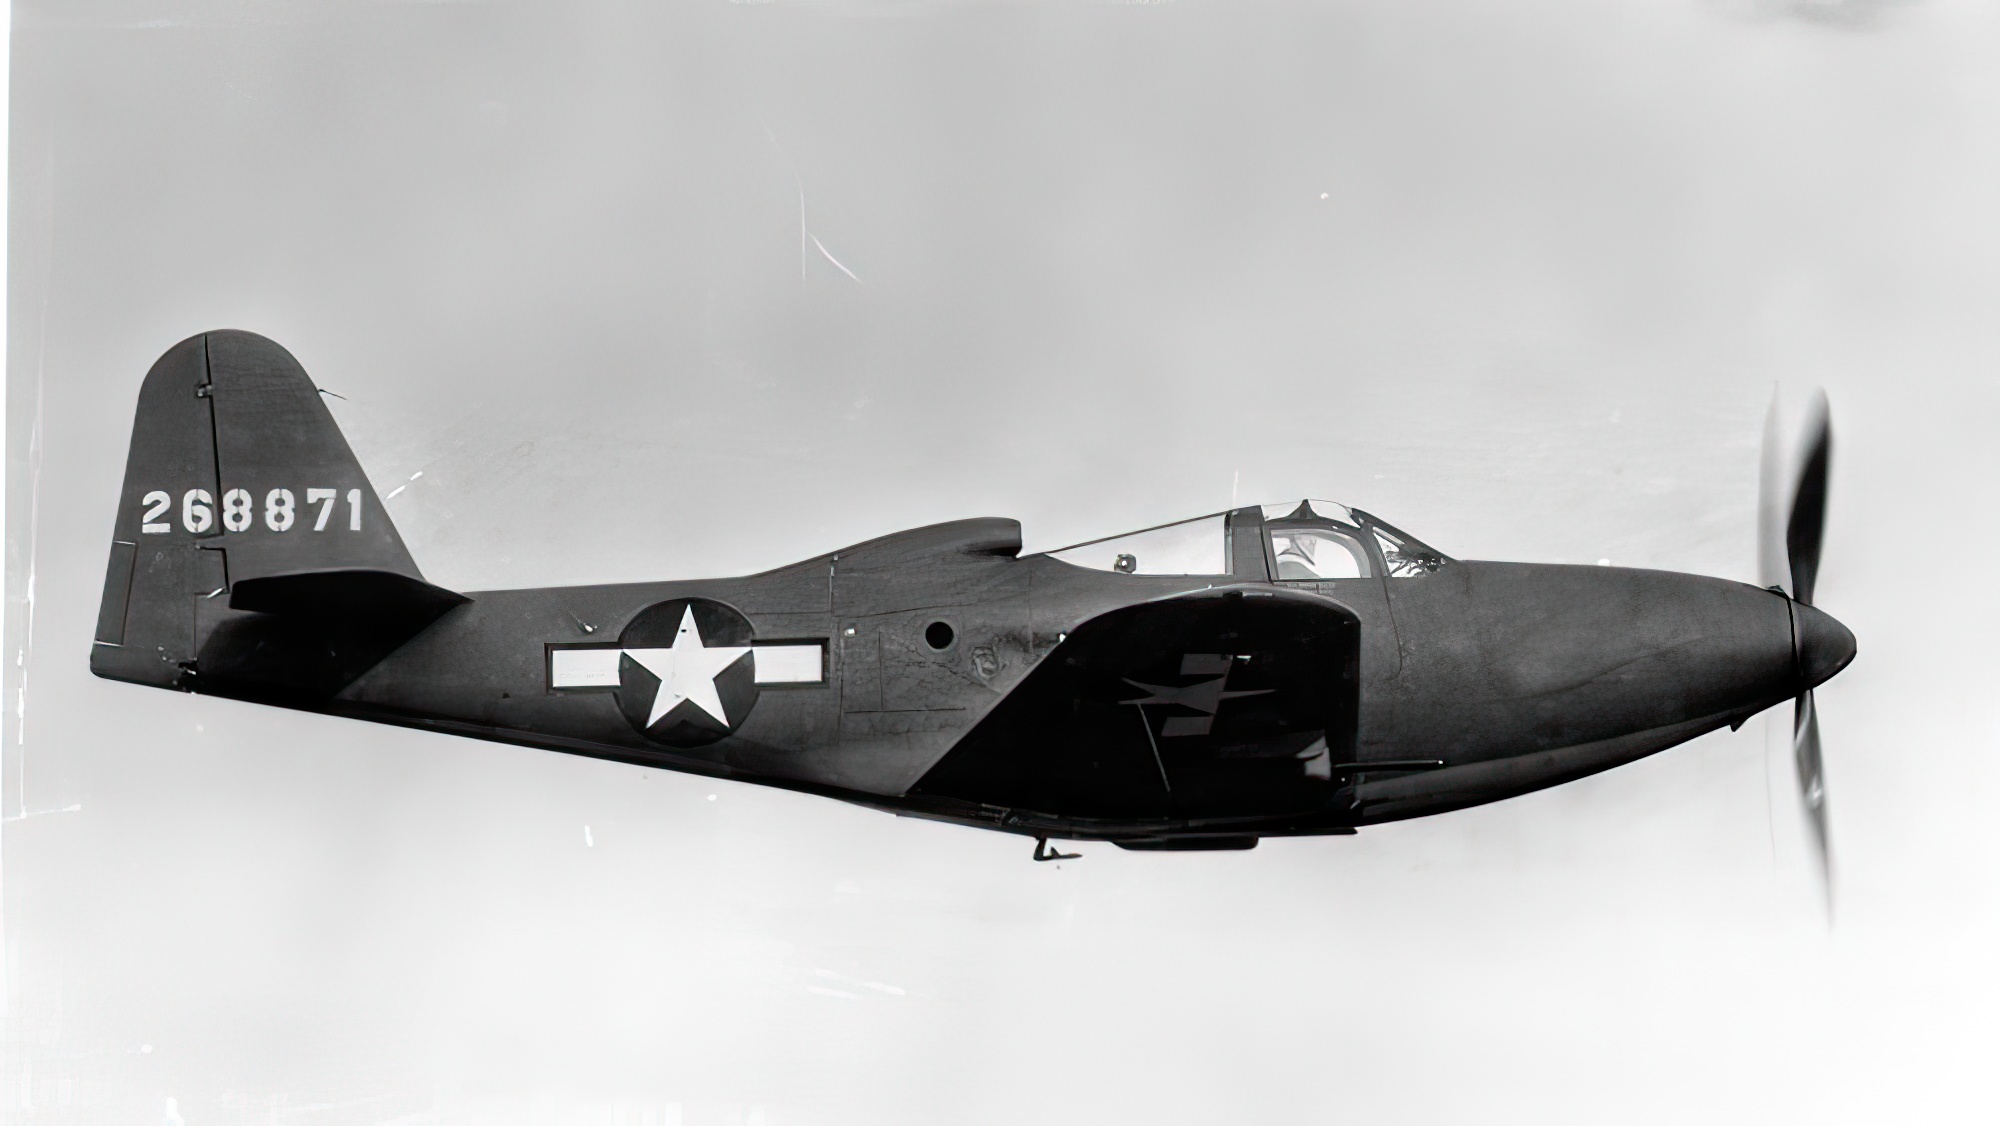 King Cobra Bell P-63A 42-68871